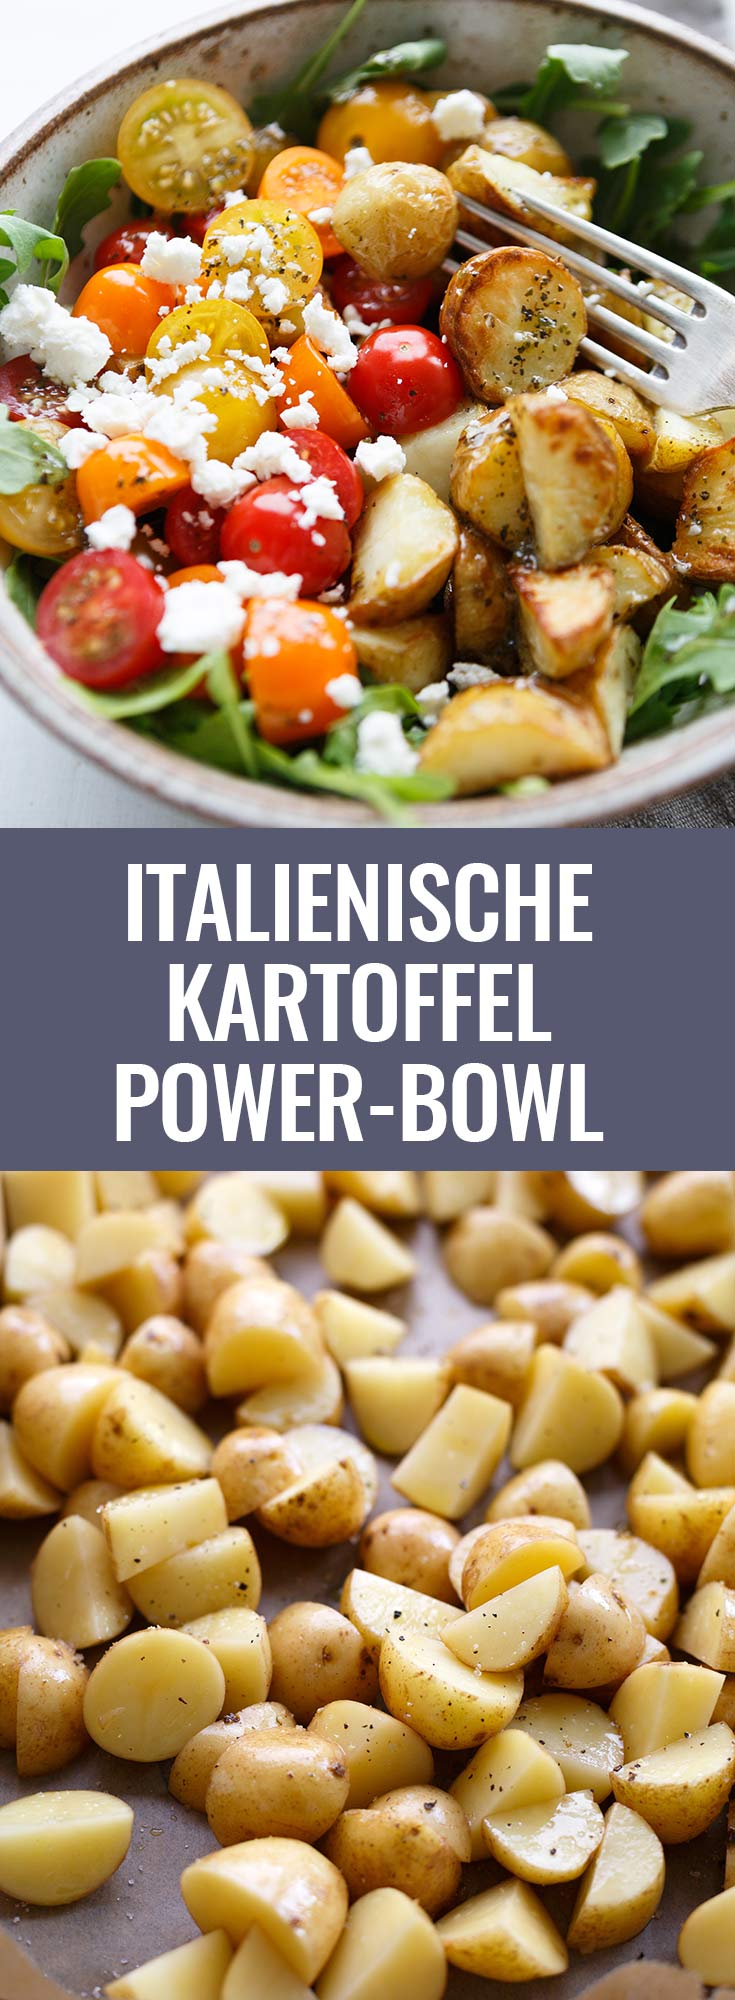 Italienische Kartoffel Power Bowl mit Knoblauch-Olivenöl Dressing. Dieses einfache Rezept ist vollgepackt mit Rucola, Tomaten, Feta und cremigstem Dressing. Mega gut! - Kochkarussell.com